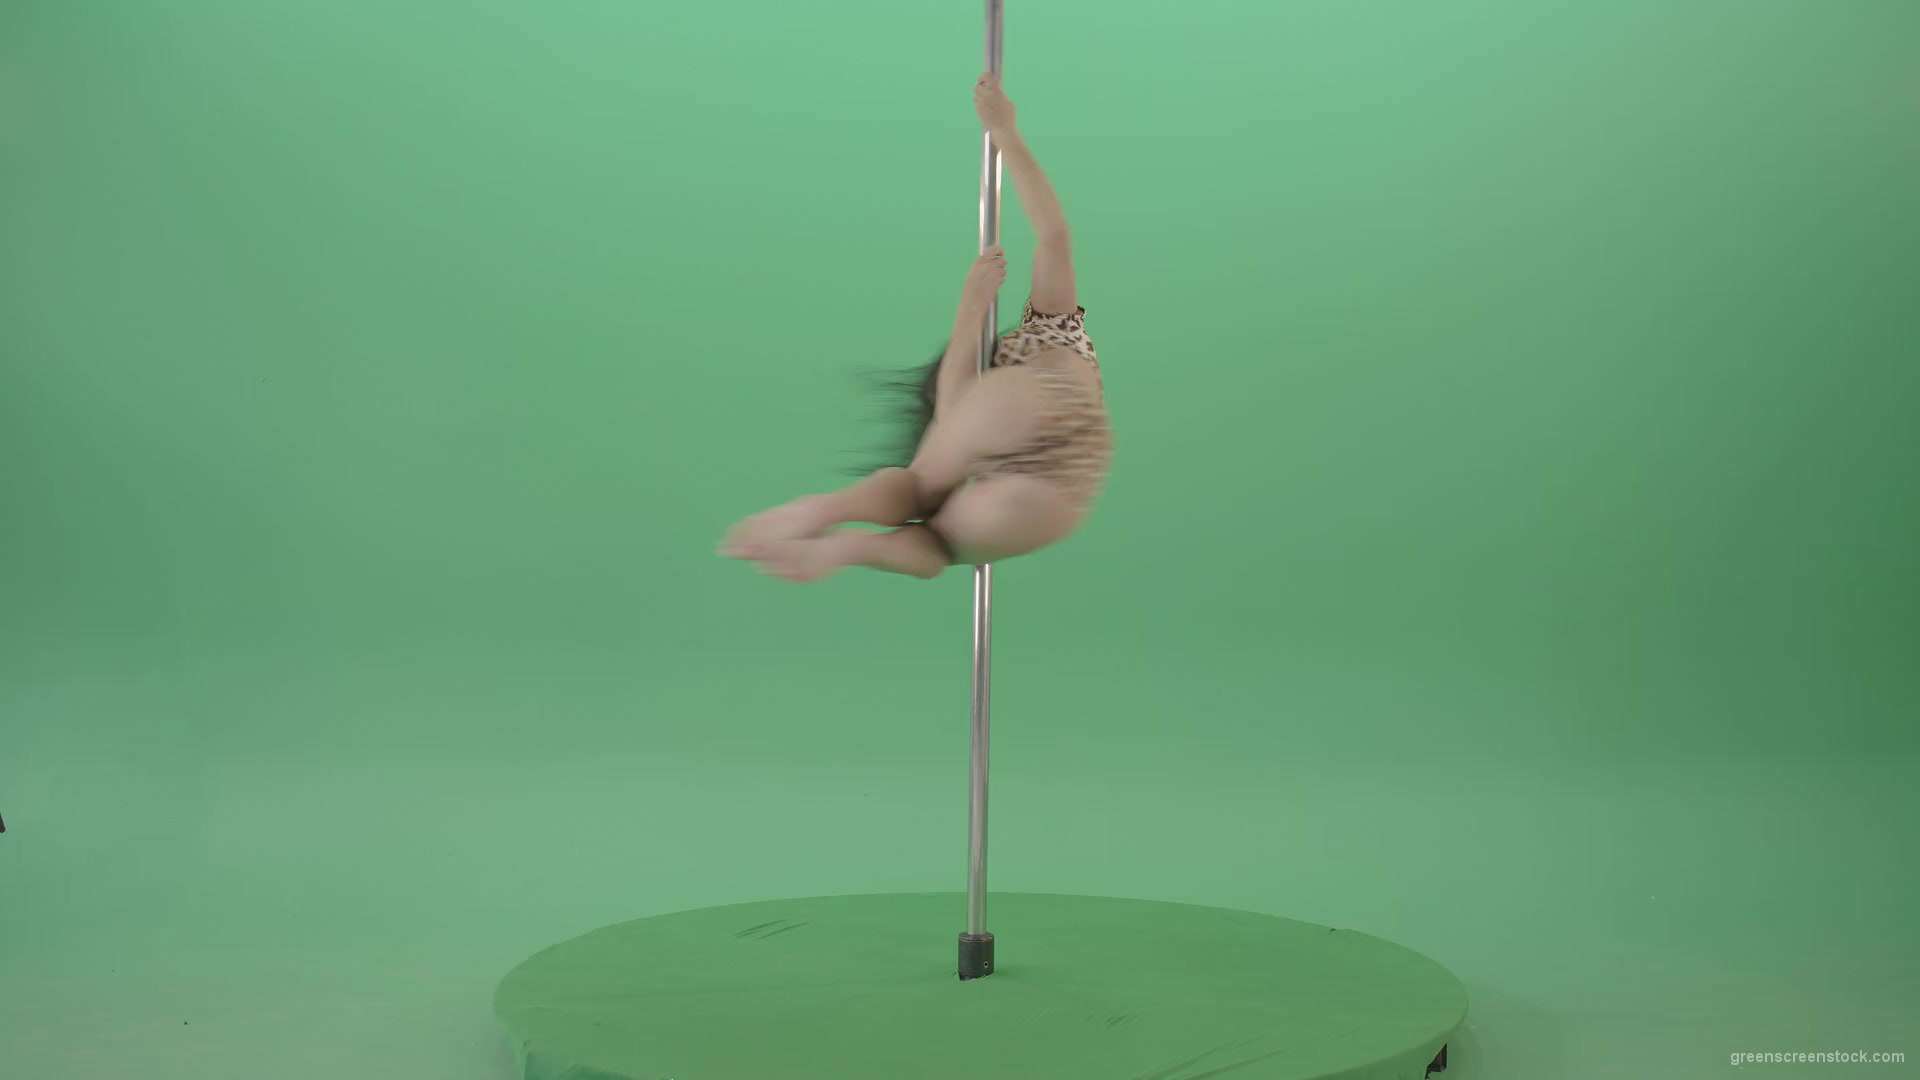 Stripteas-Girl-in-leopard-skin-wear-spinning-on-pilon-dancing-pole-isolated-on-Green-Screen-4K-Video-Footage-1920_007 Green Screen Stock